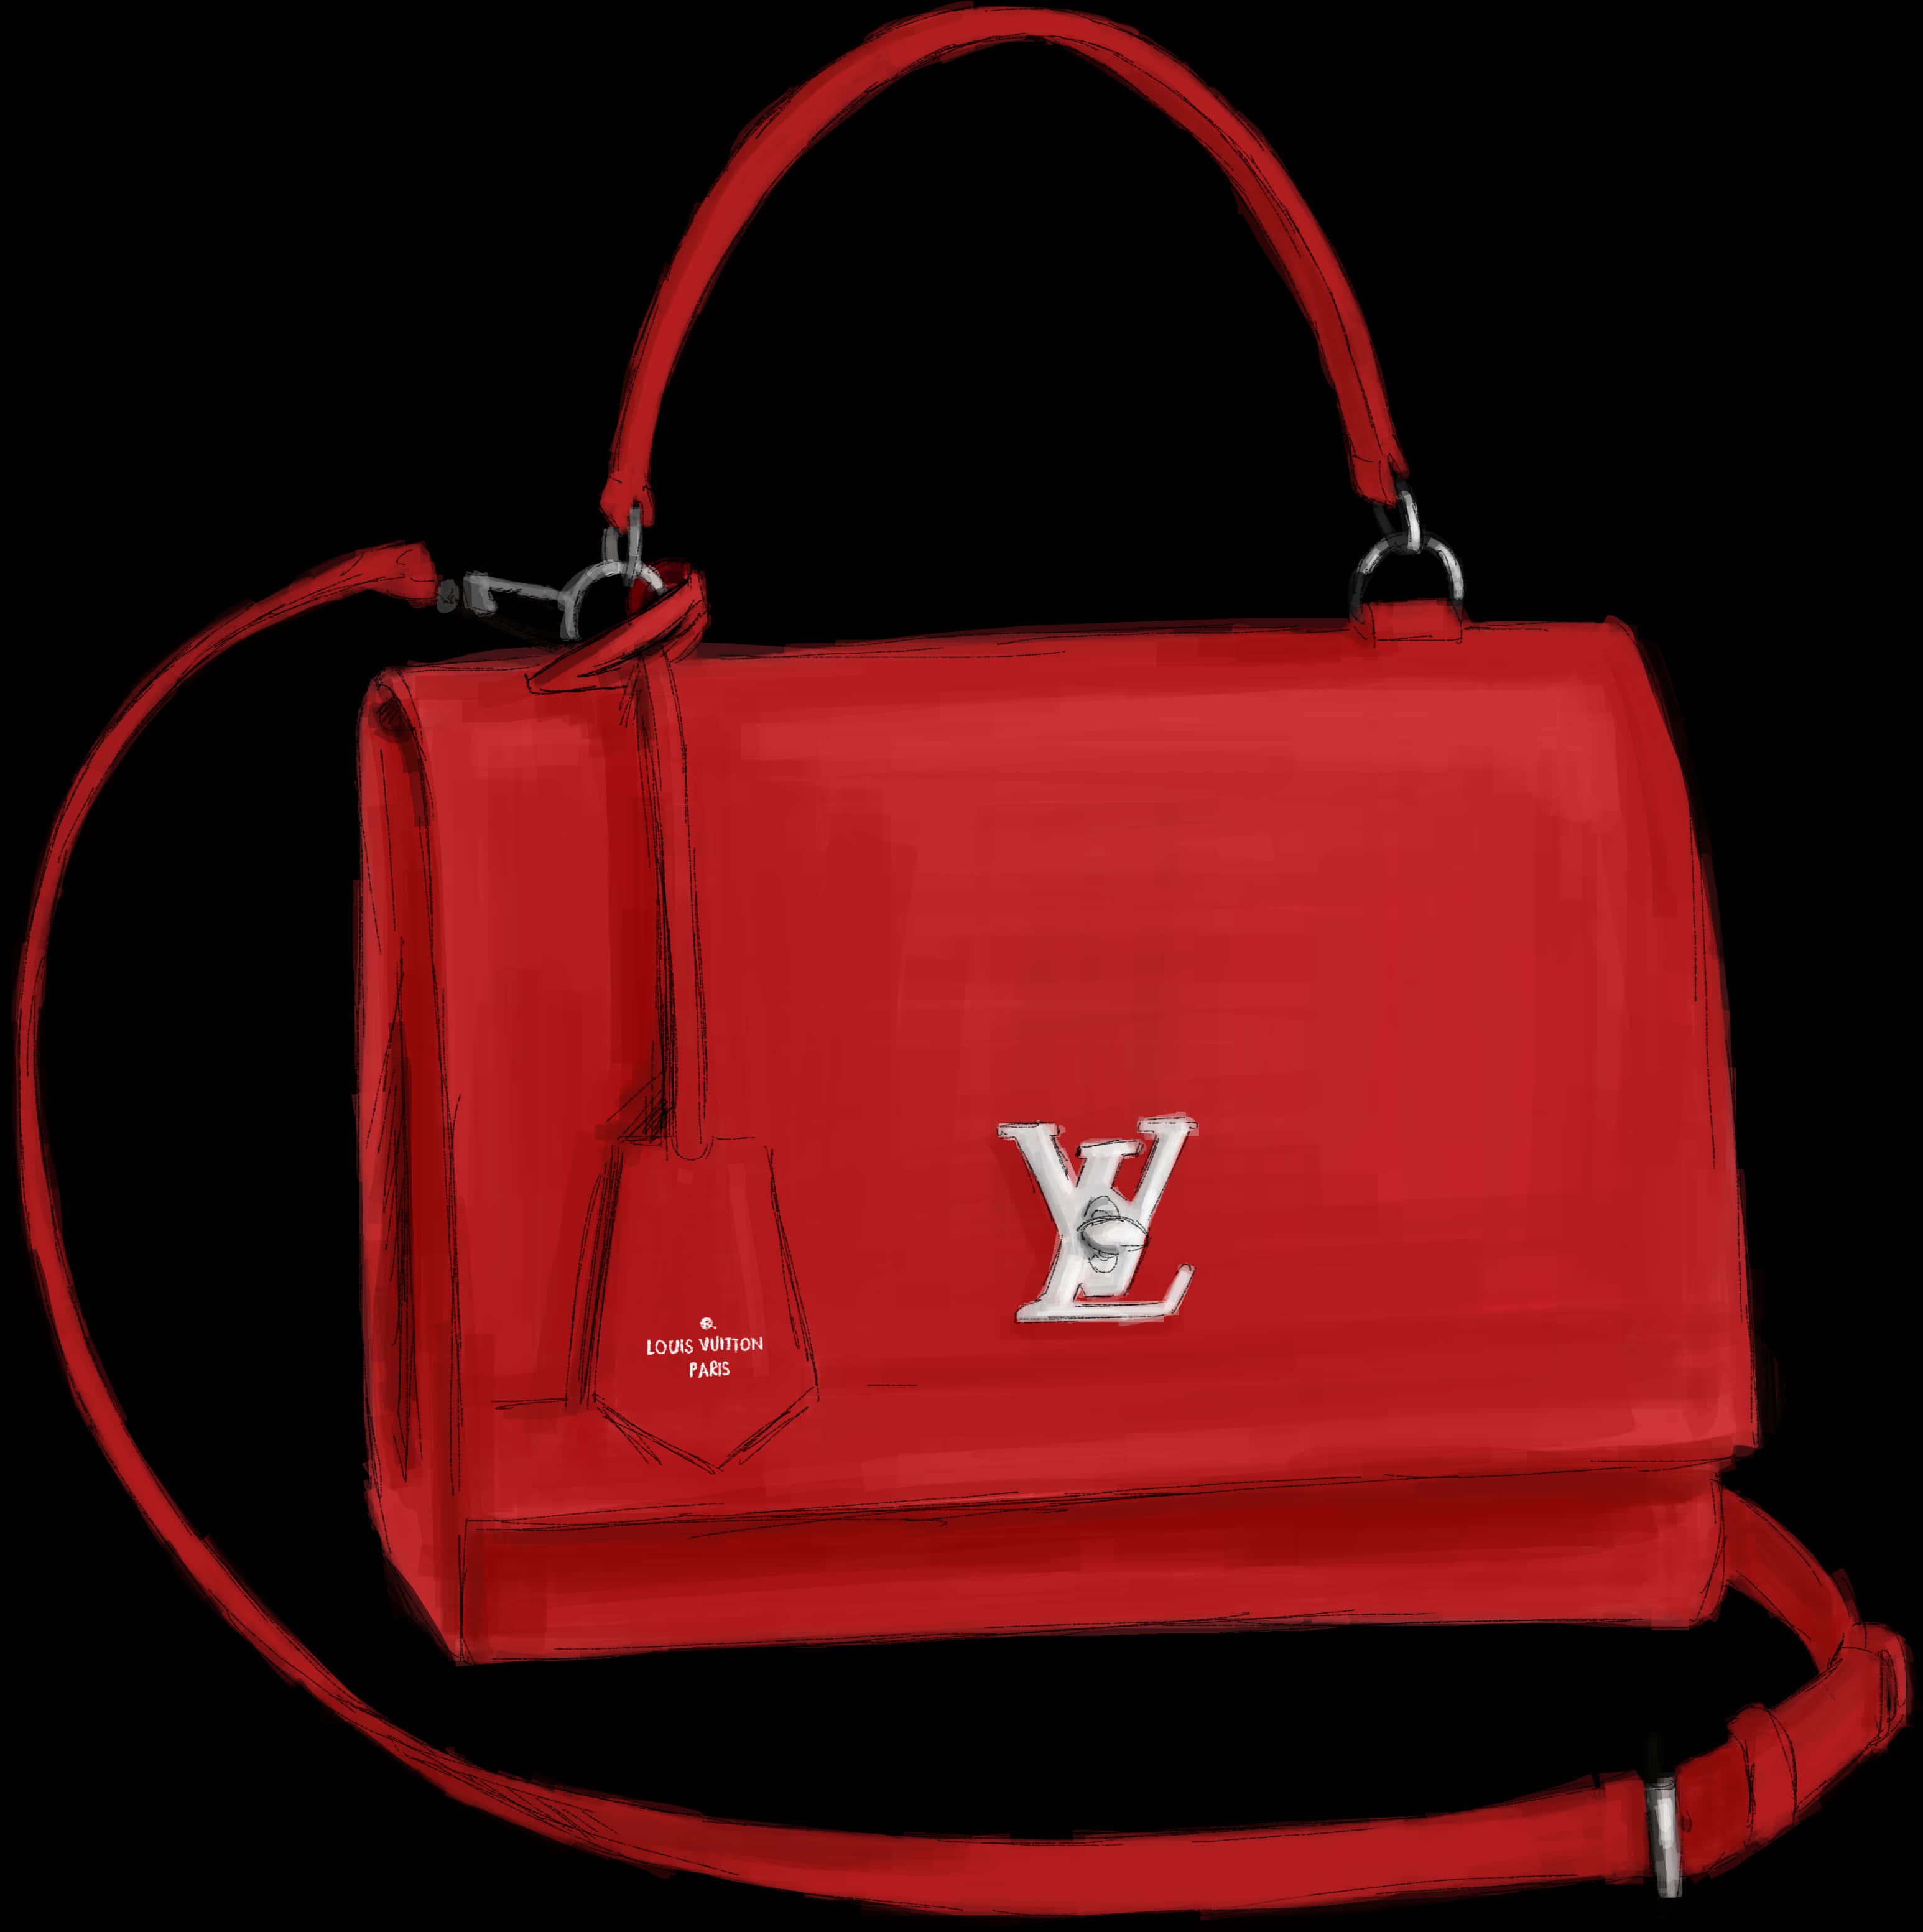 Red Louis Vuitton Handbag Illustration